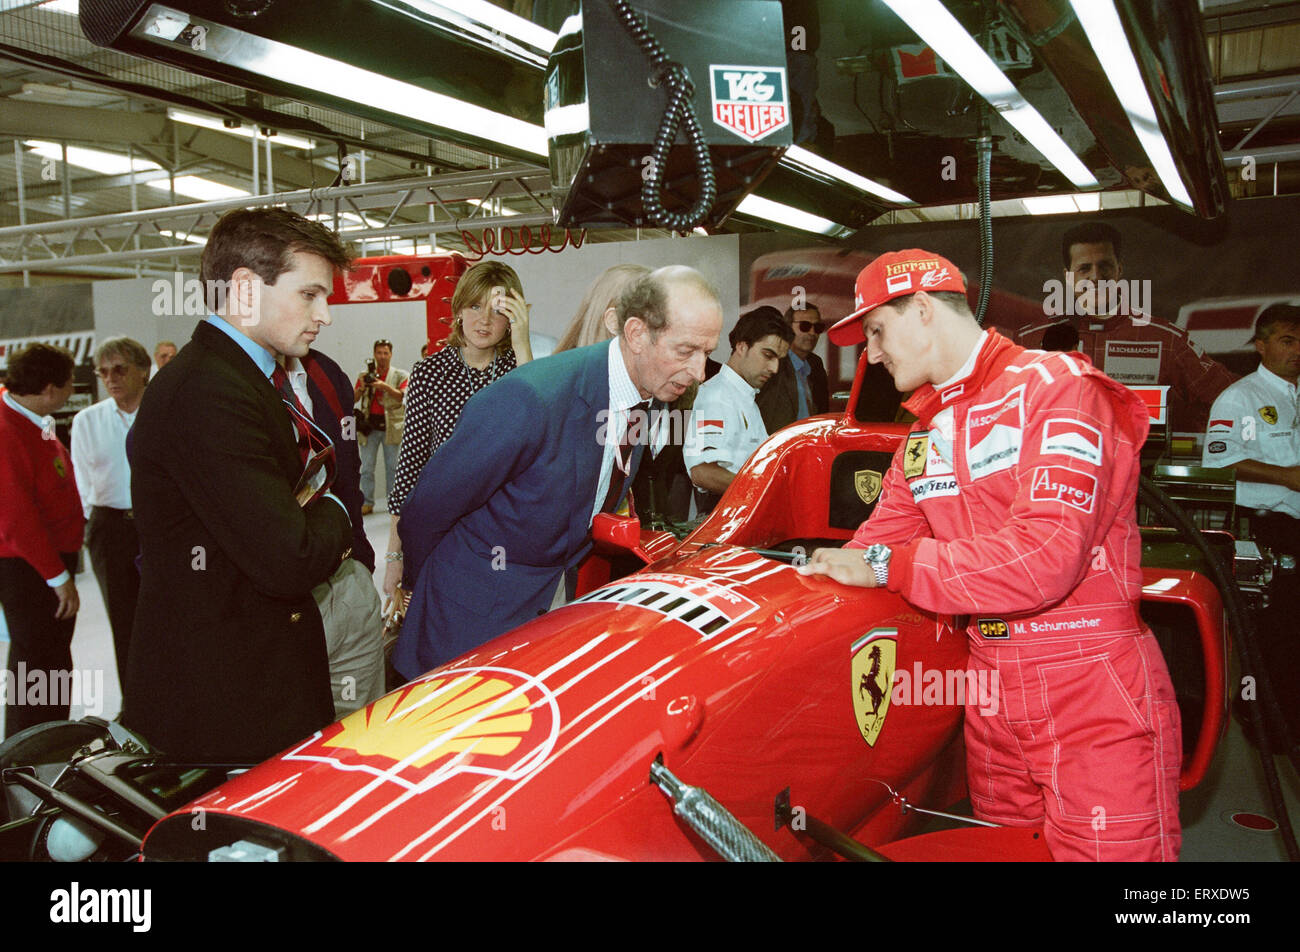 Michael Schumacher nació el 3 de enero de 1969, es un piloto de carreras alemán jubilado. Schumacher es siete veces Campeón del Mundo de Fórmula Uno y es ampliamente considerado como uno de los grandes pilotos de F1 de todos los tiempos.tiene muchos registros del conductor de Fórmula Uno, incluyendo mo Foto de stock